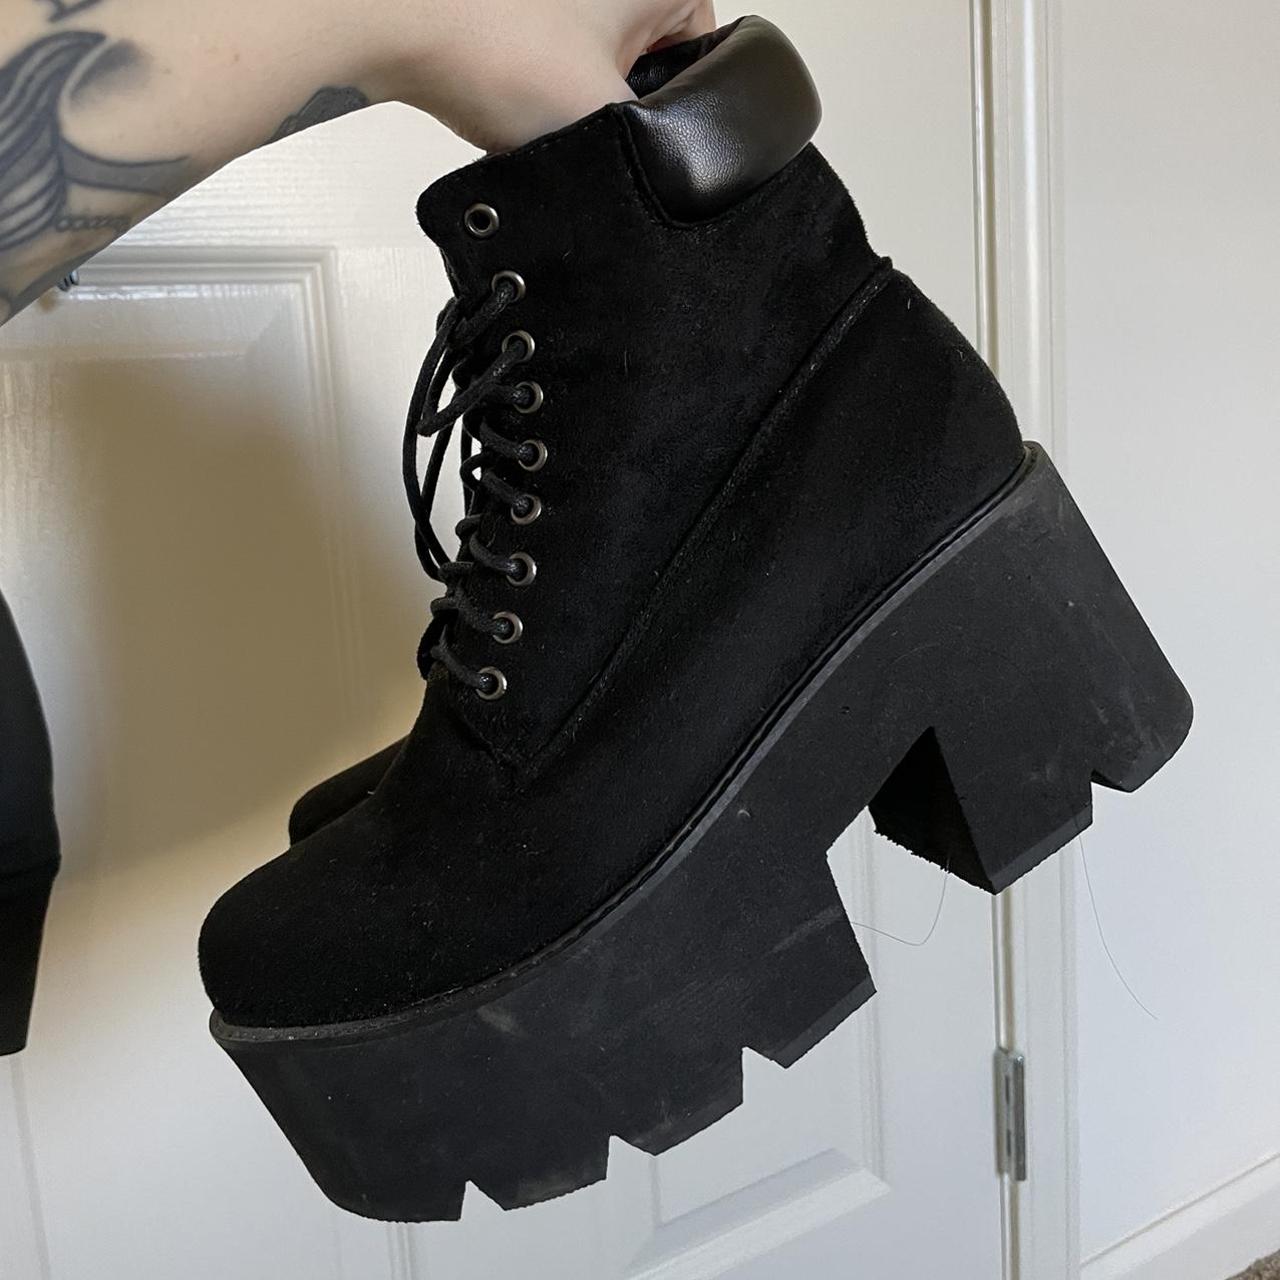 Cute, comfy black faux suede boots 🖤 - Depop